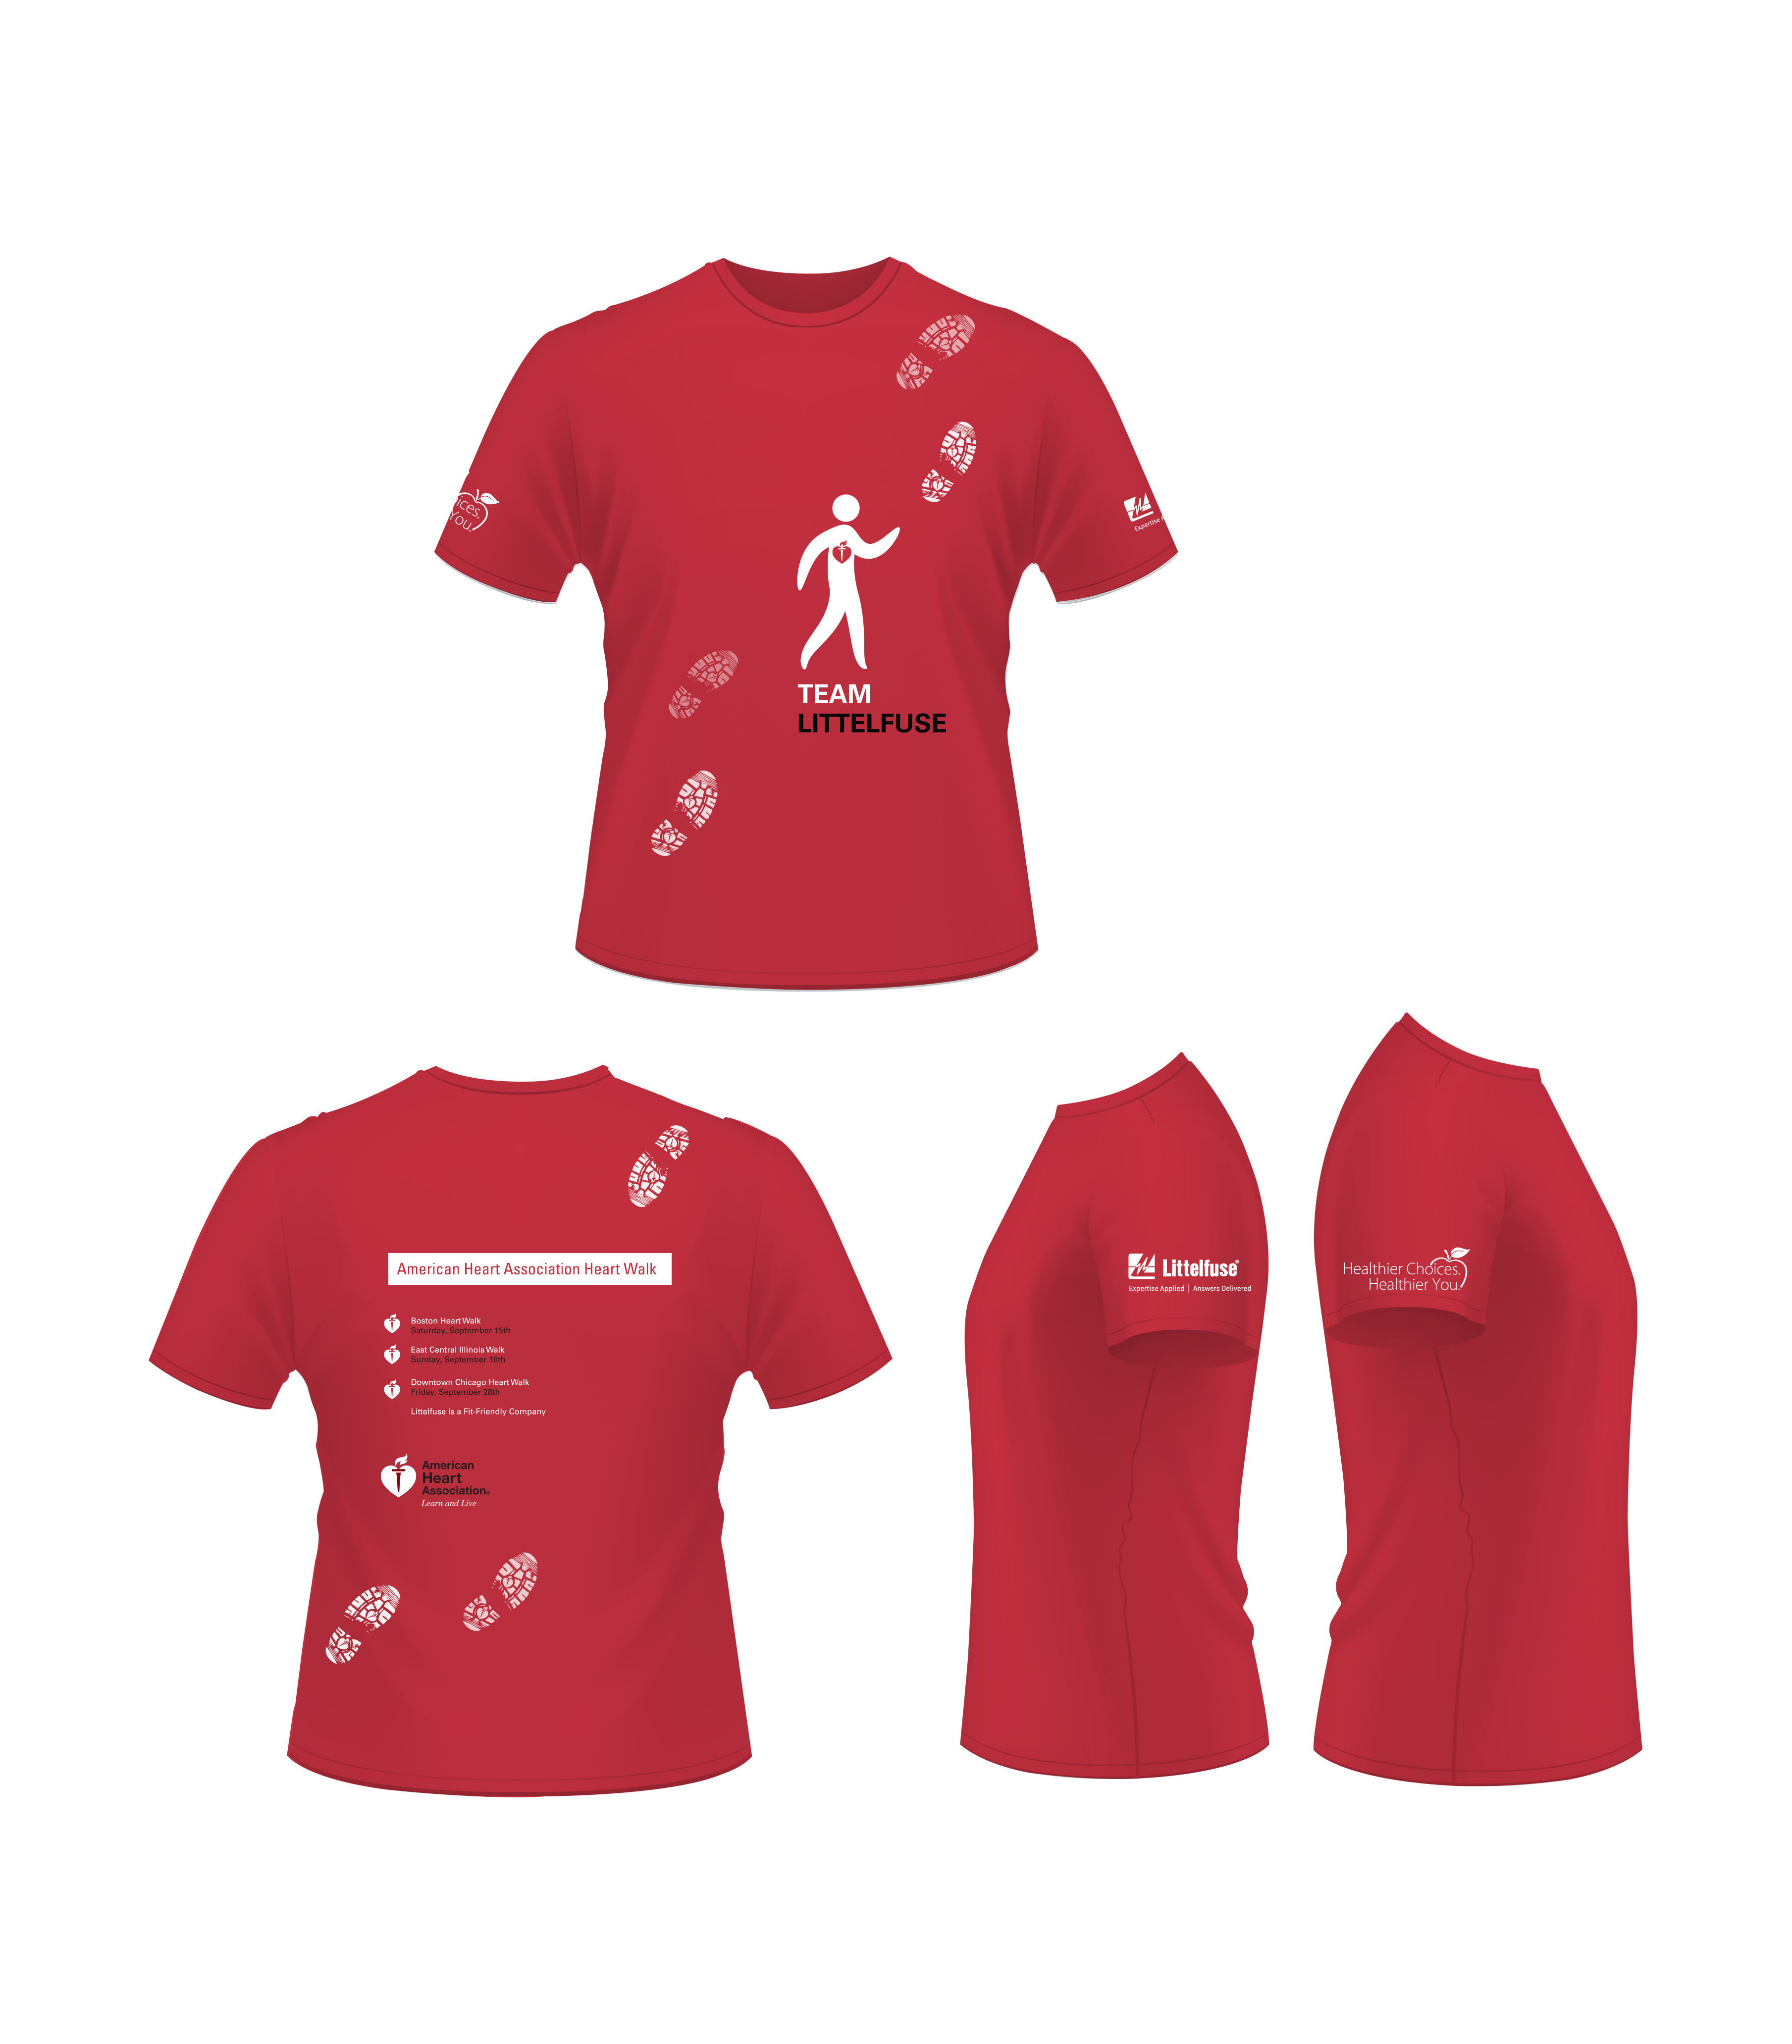 American Heart Association Heart Walk T-Shirt :: Behance